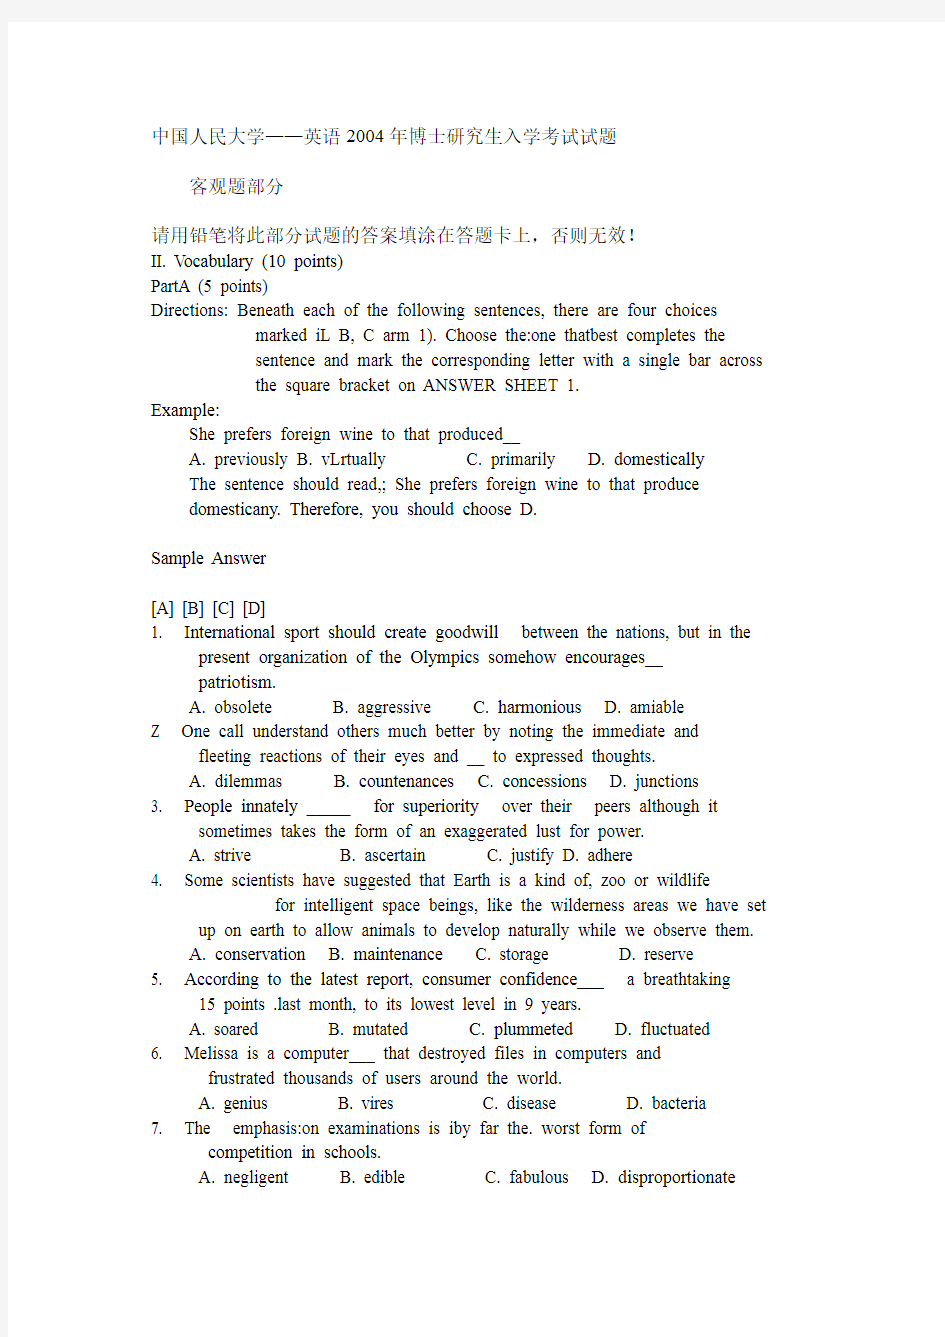 中国人民大学英语博士研究生入学考试试题教学提纲